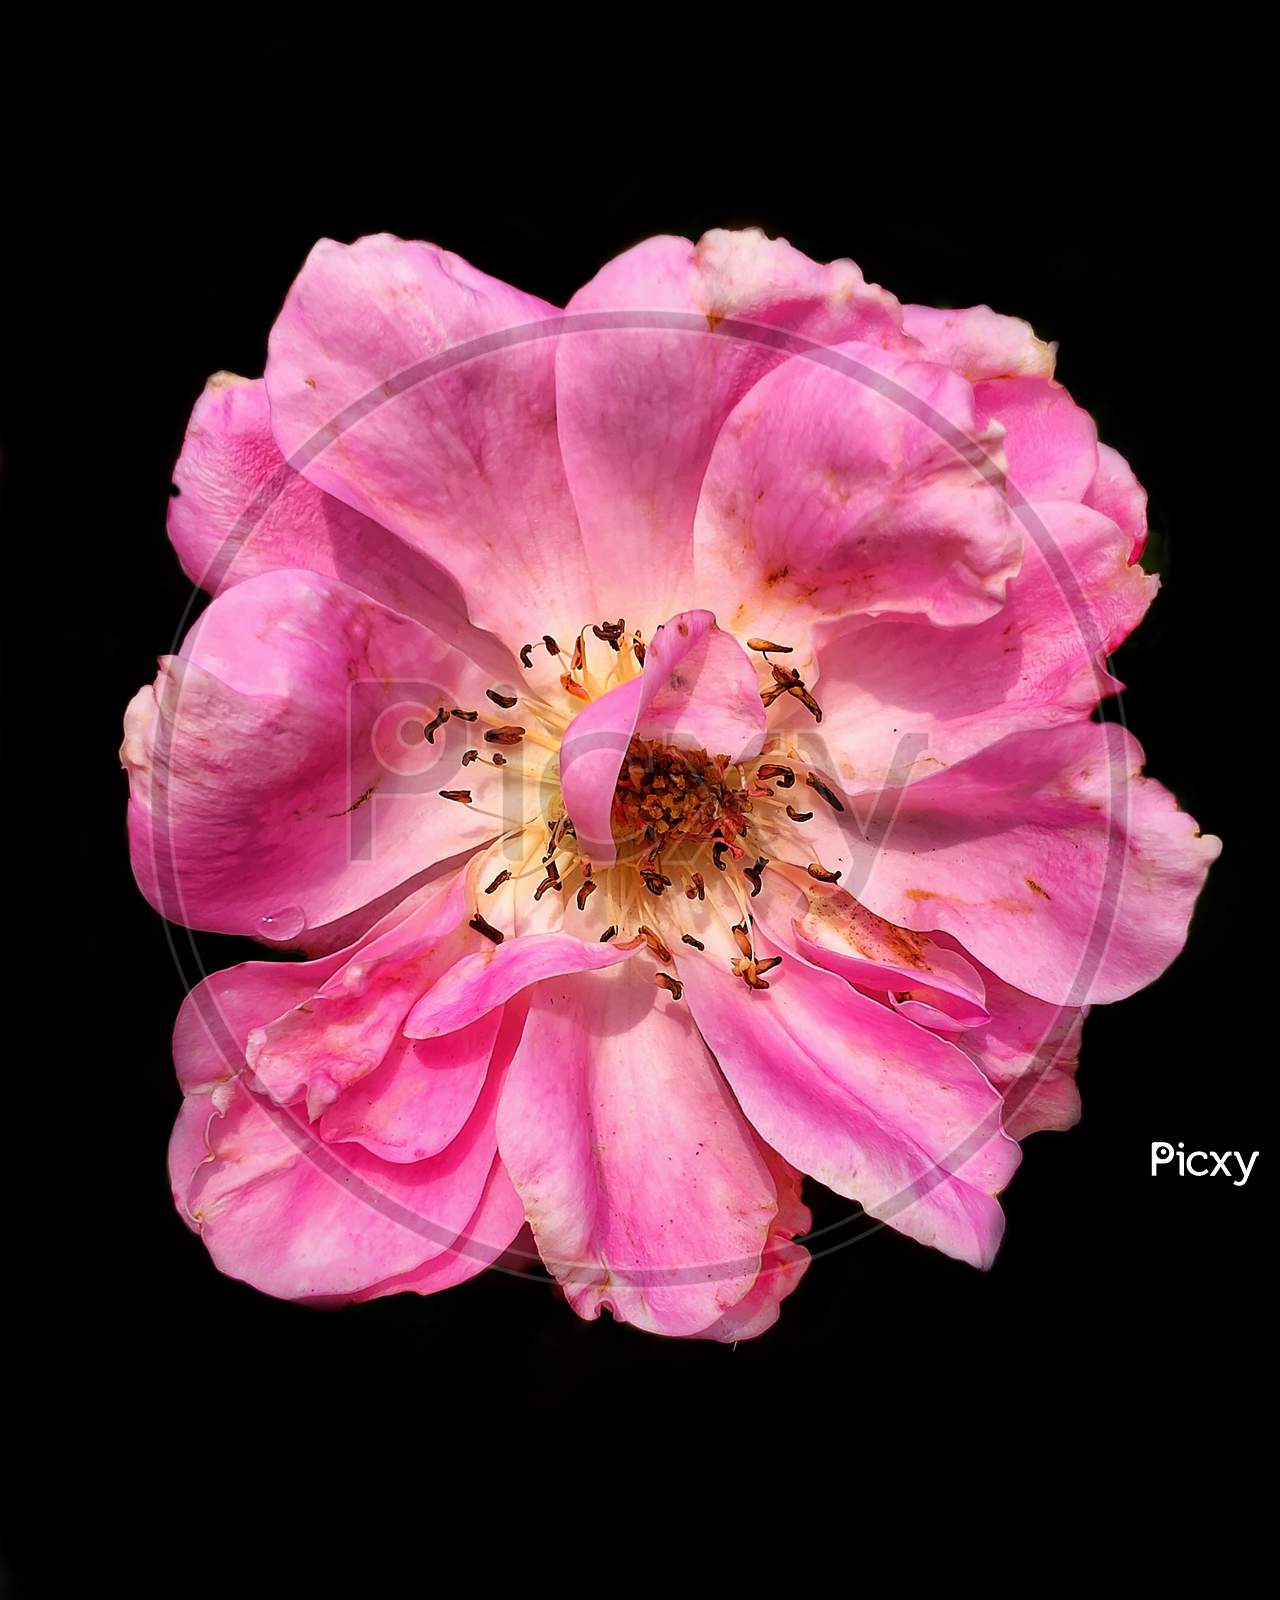 Close-up shot of a rose